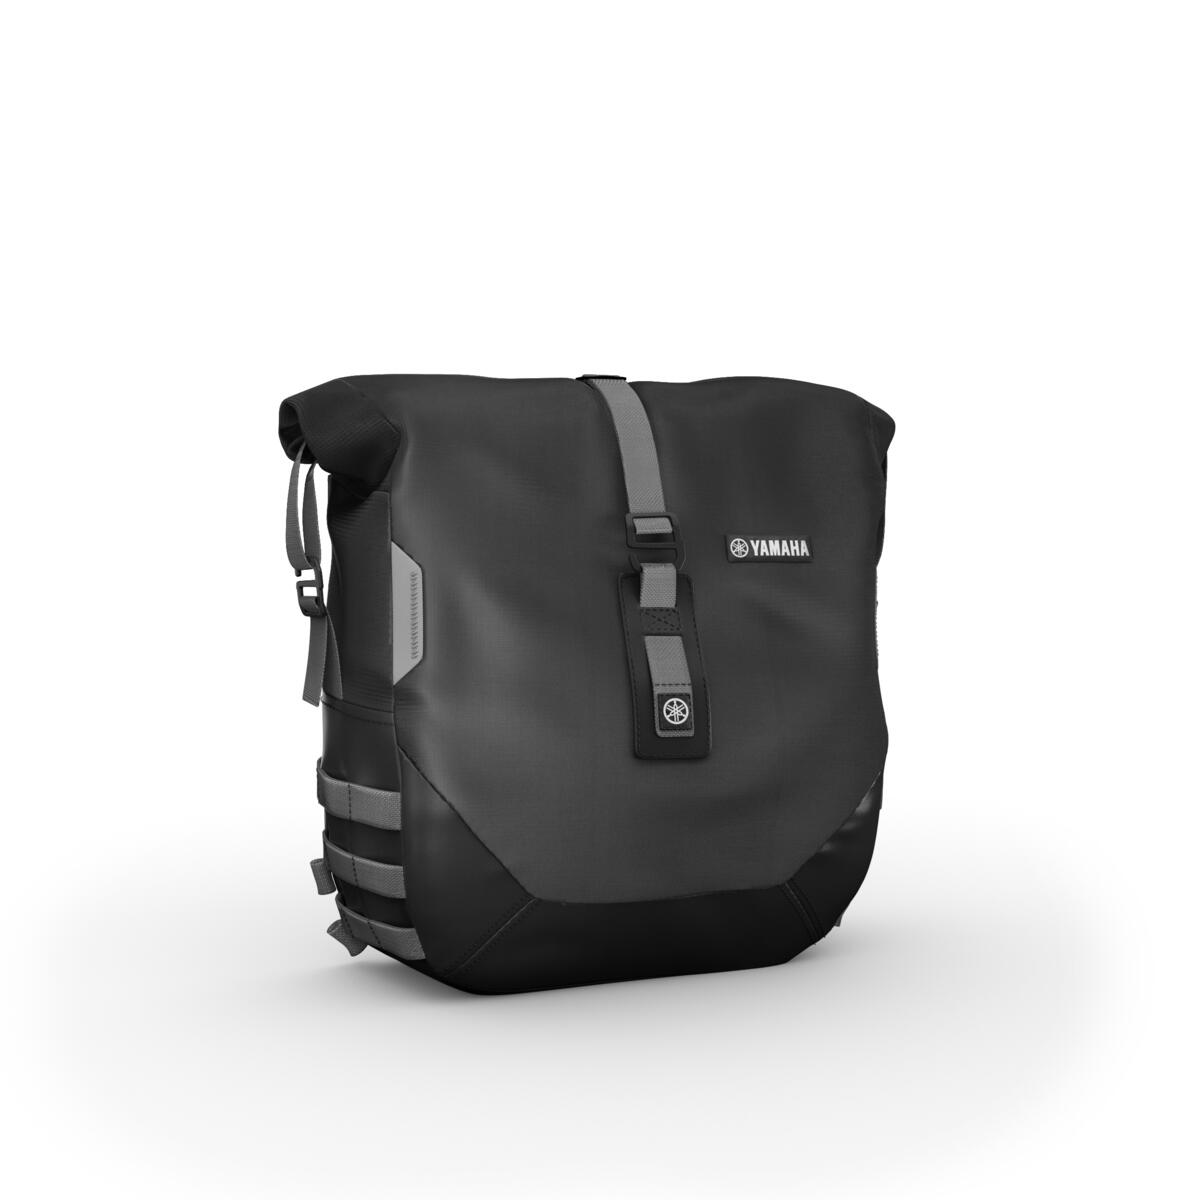 Verwandle deine XSR900 mit dem Weekend Pack in einen perfekten Langstrecken-Roadster. Durch die Ausstattung deines Bikes mit zwei Soft-Seitentaschen von je 13,5 l Volumen, die je 5 kg aufnehmen können, kannst du die wichtigsten Sachen für die extralange Reise einpacken. Mit den leicht anzubringenden Taschen mit wasserdichtem Futter wird dein Gepäck vor ungünstigen Wetterbedingungen geschützt. Das Paket enthält ein USB-Ladegerät zum Aufladen des Navigationsgeräts oder Handys während der Fahrt.